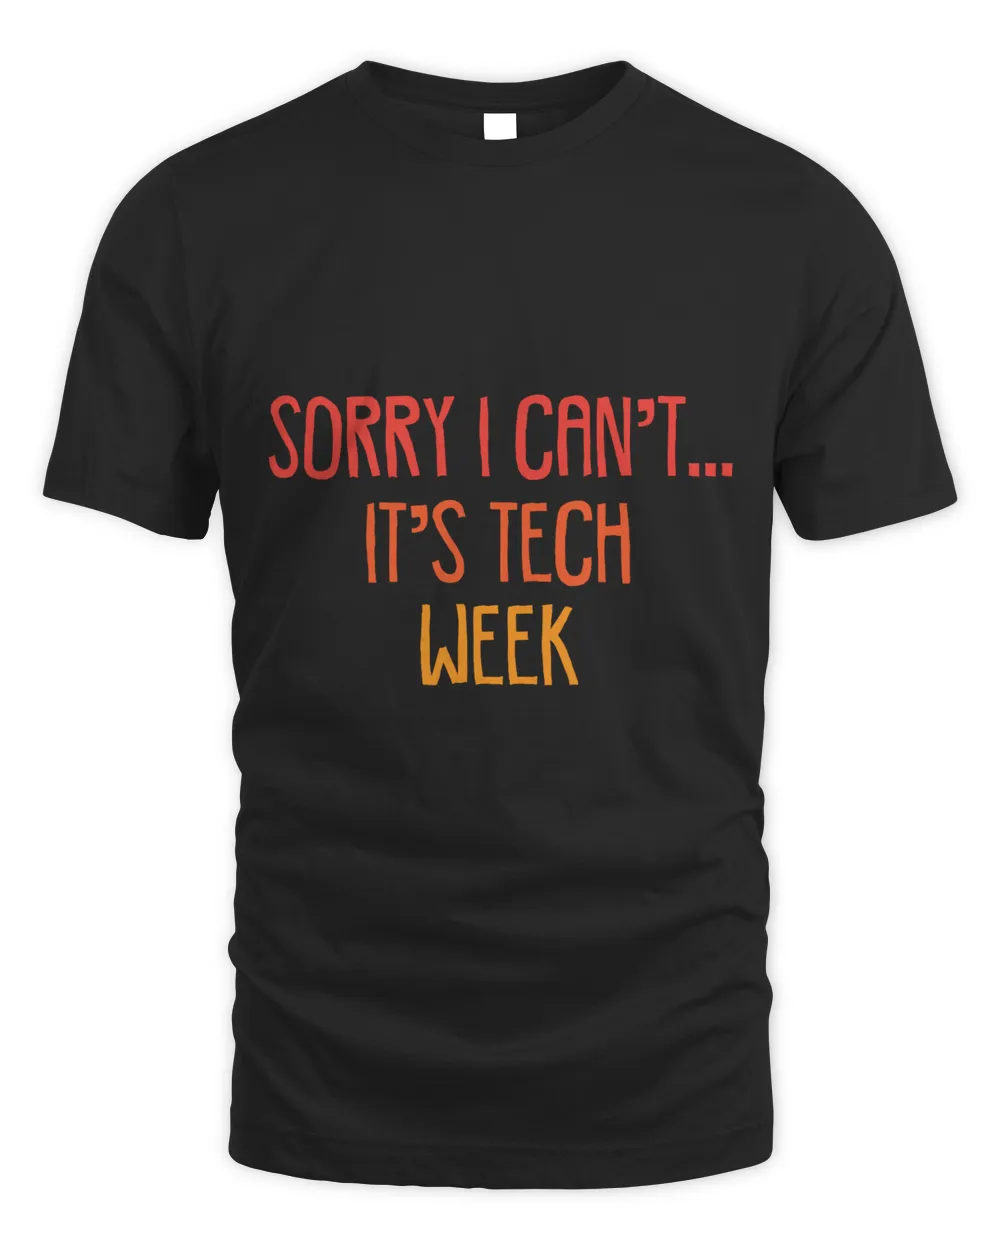 Sorry I can't... It's tech week